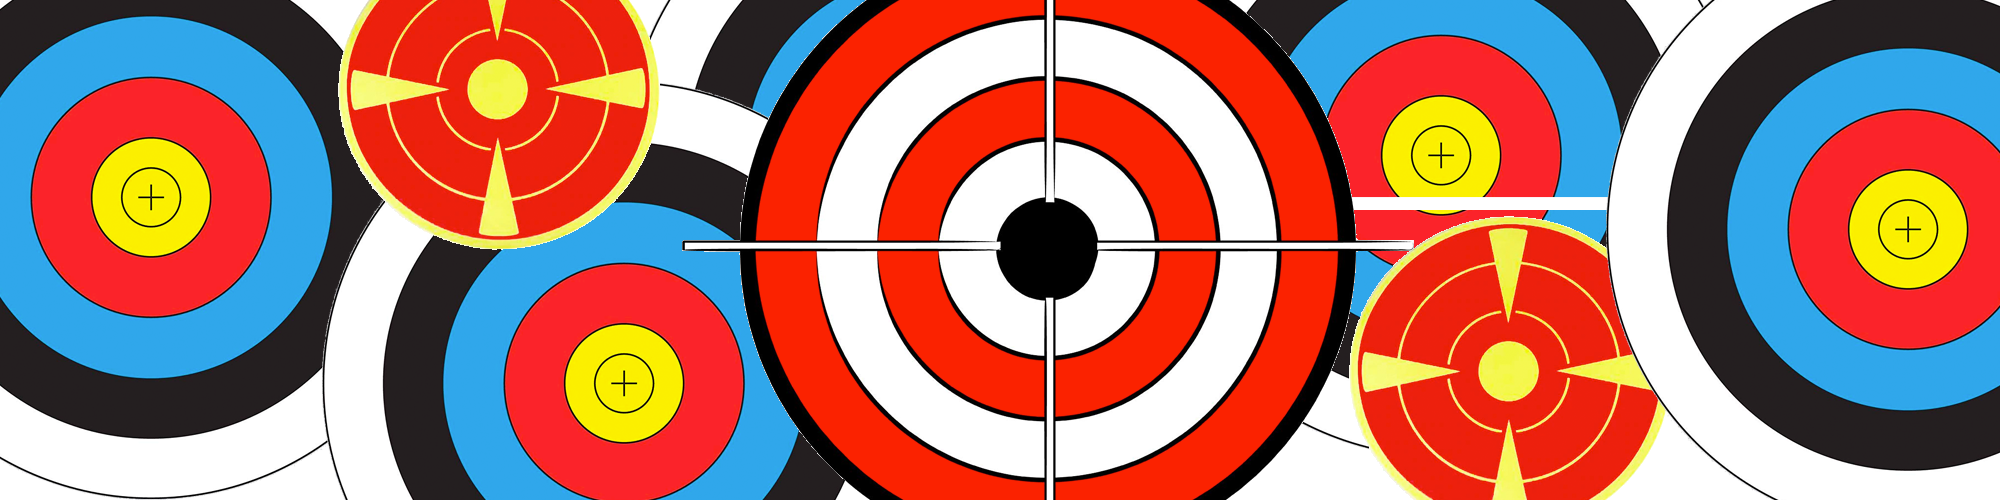 multiple bullseye targets